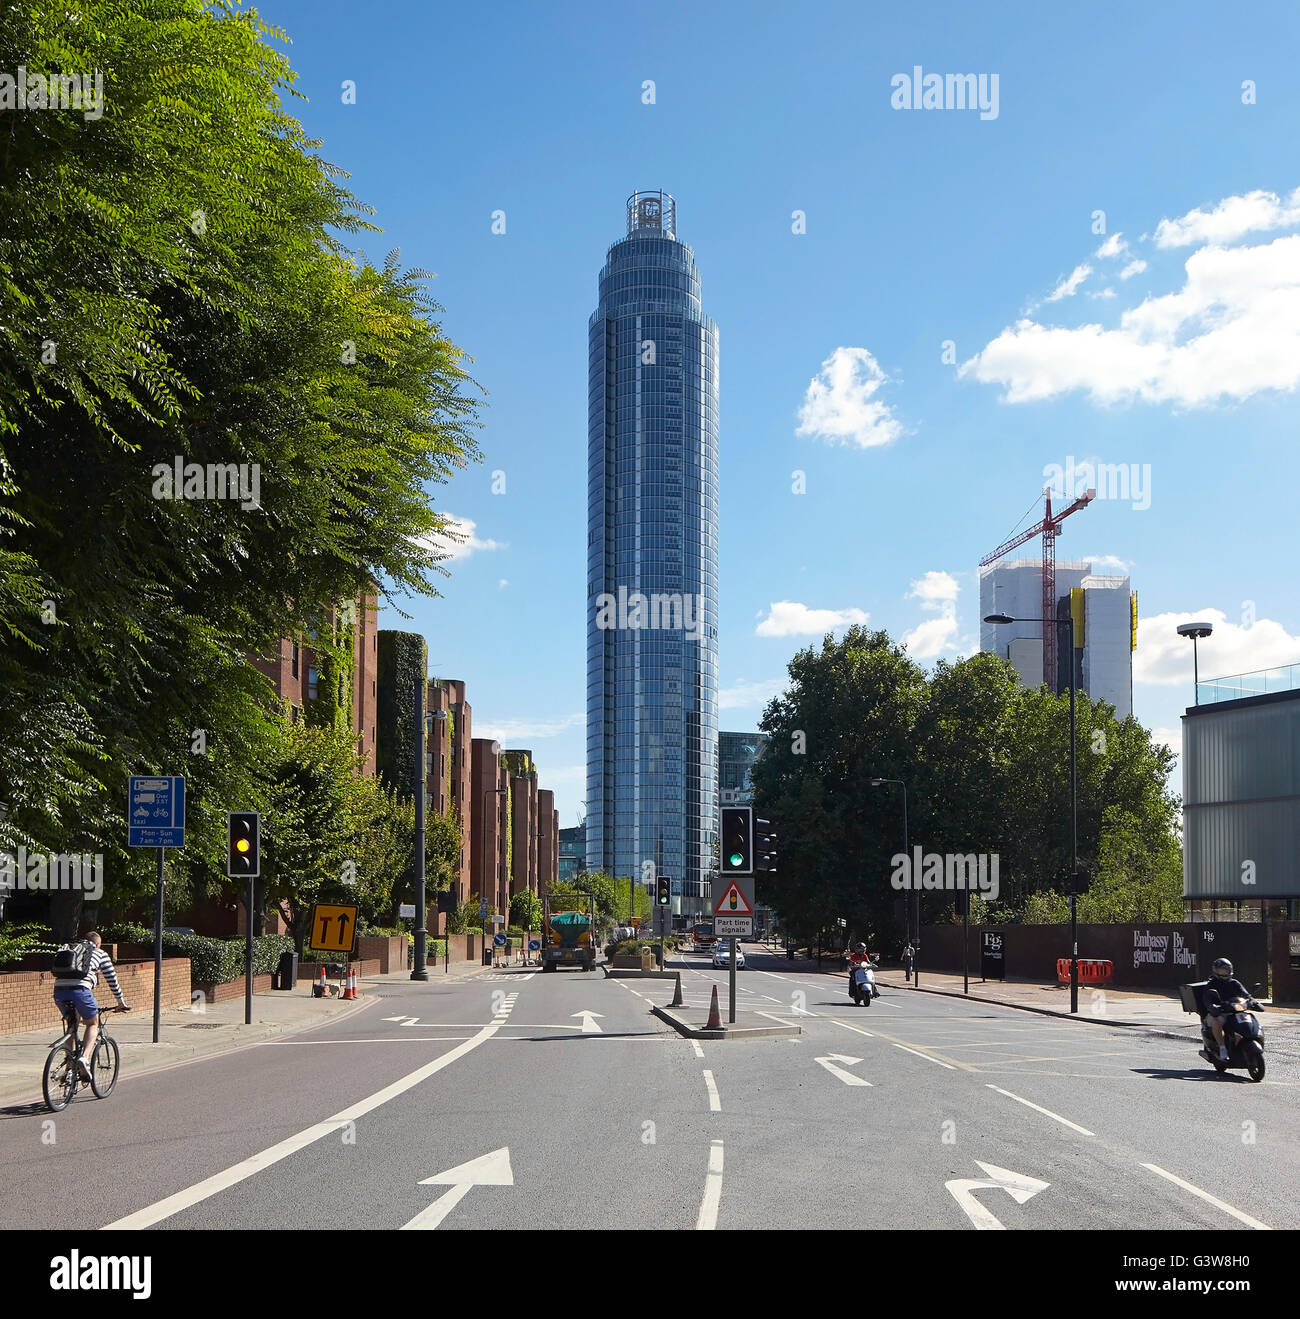 Blick entlang der Straße in Richtung Hochhaus und Kontext. St George Wharf Tower, London, Vereinigtes Königreich. Architekt: Broadway Malyan Limited, 2014. Stockfoto